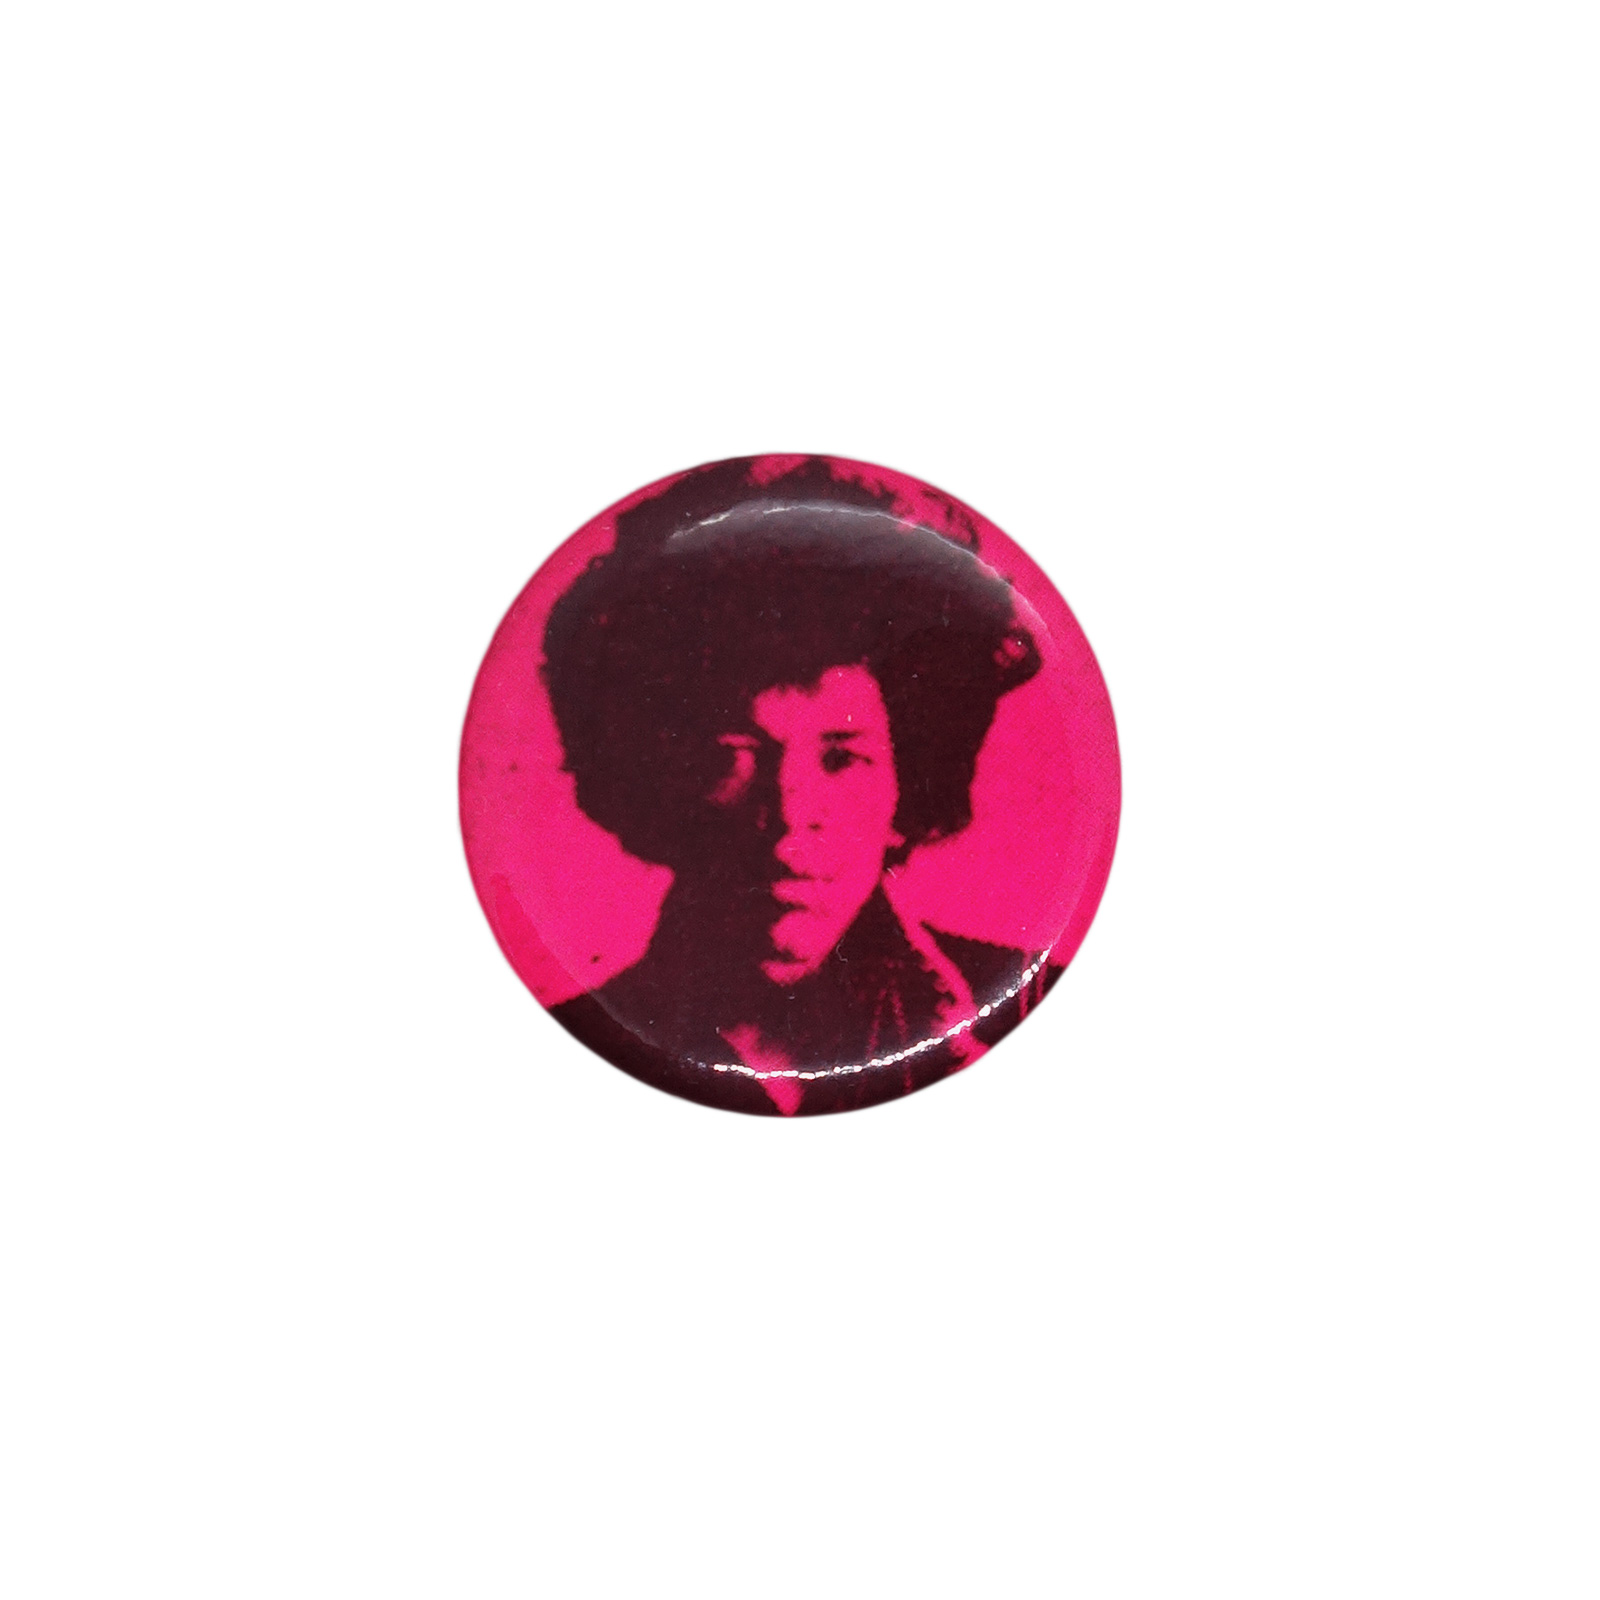 Jimi Hendrix ジミ・ヘンドリックス 缶バッジ バッチ シンガーソングライター